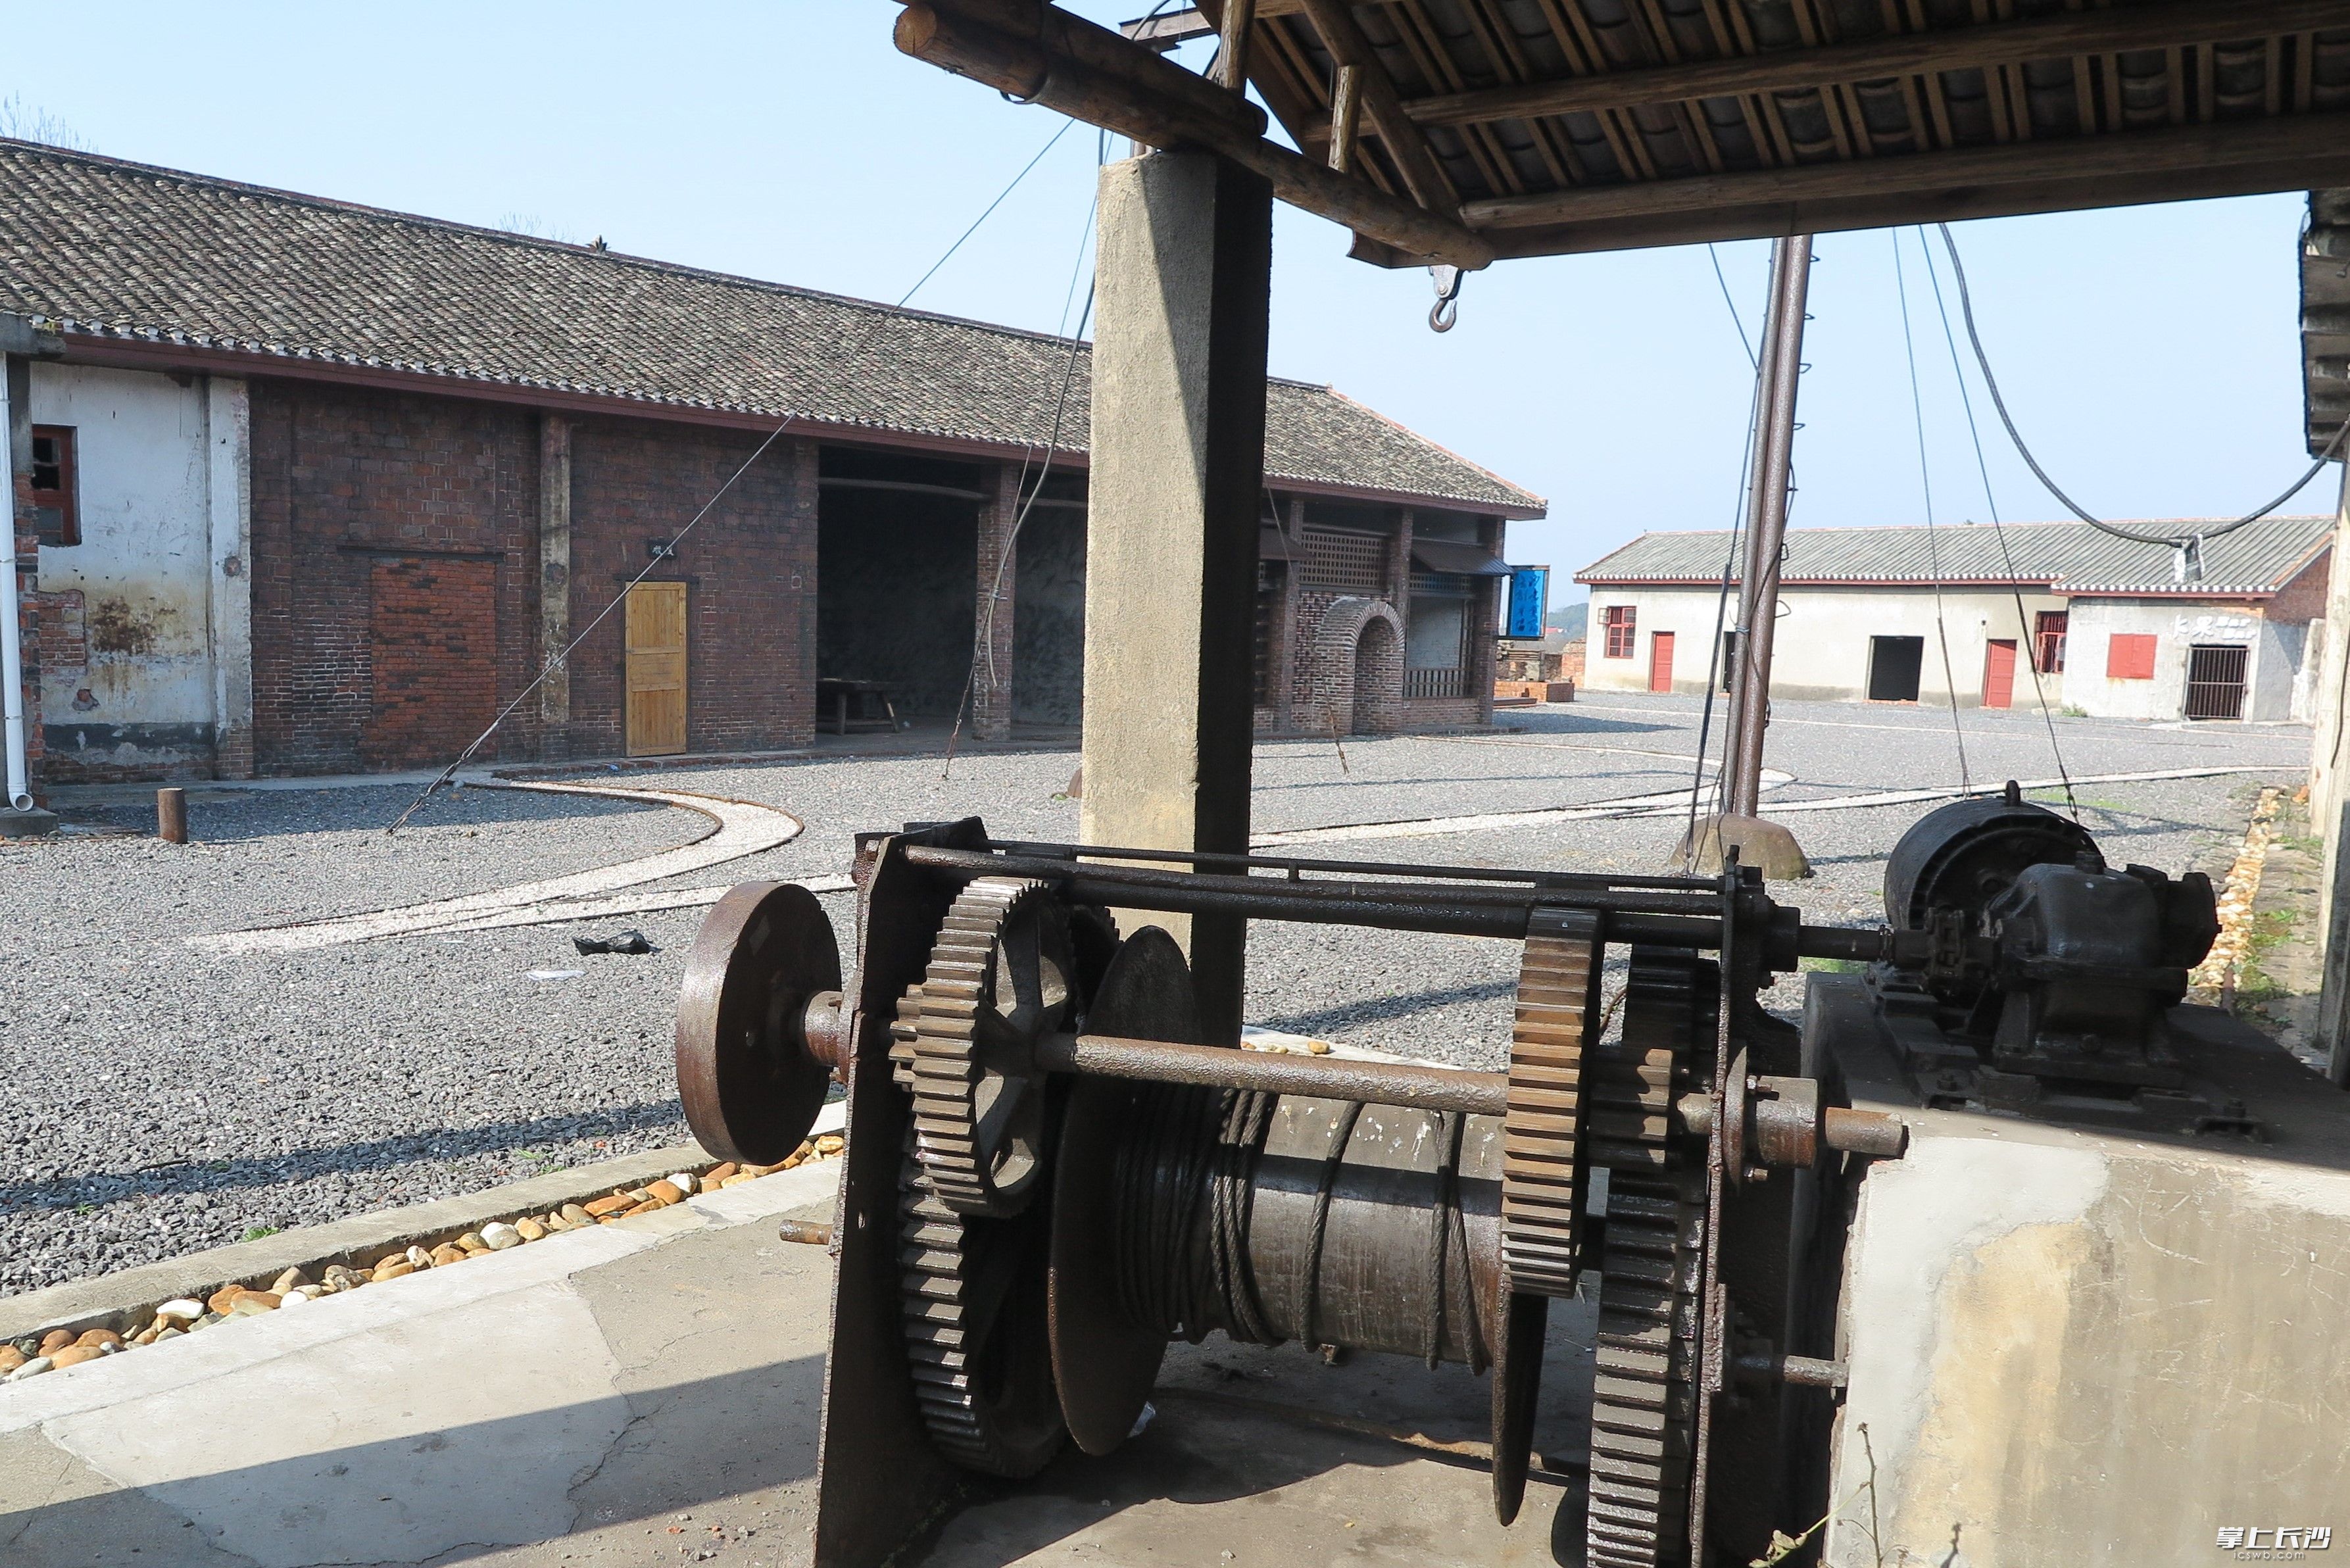 铁锈斑驳的机器，似乎在述说着煤炭坝镇因煤而兴的往昔辉煌。